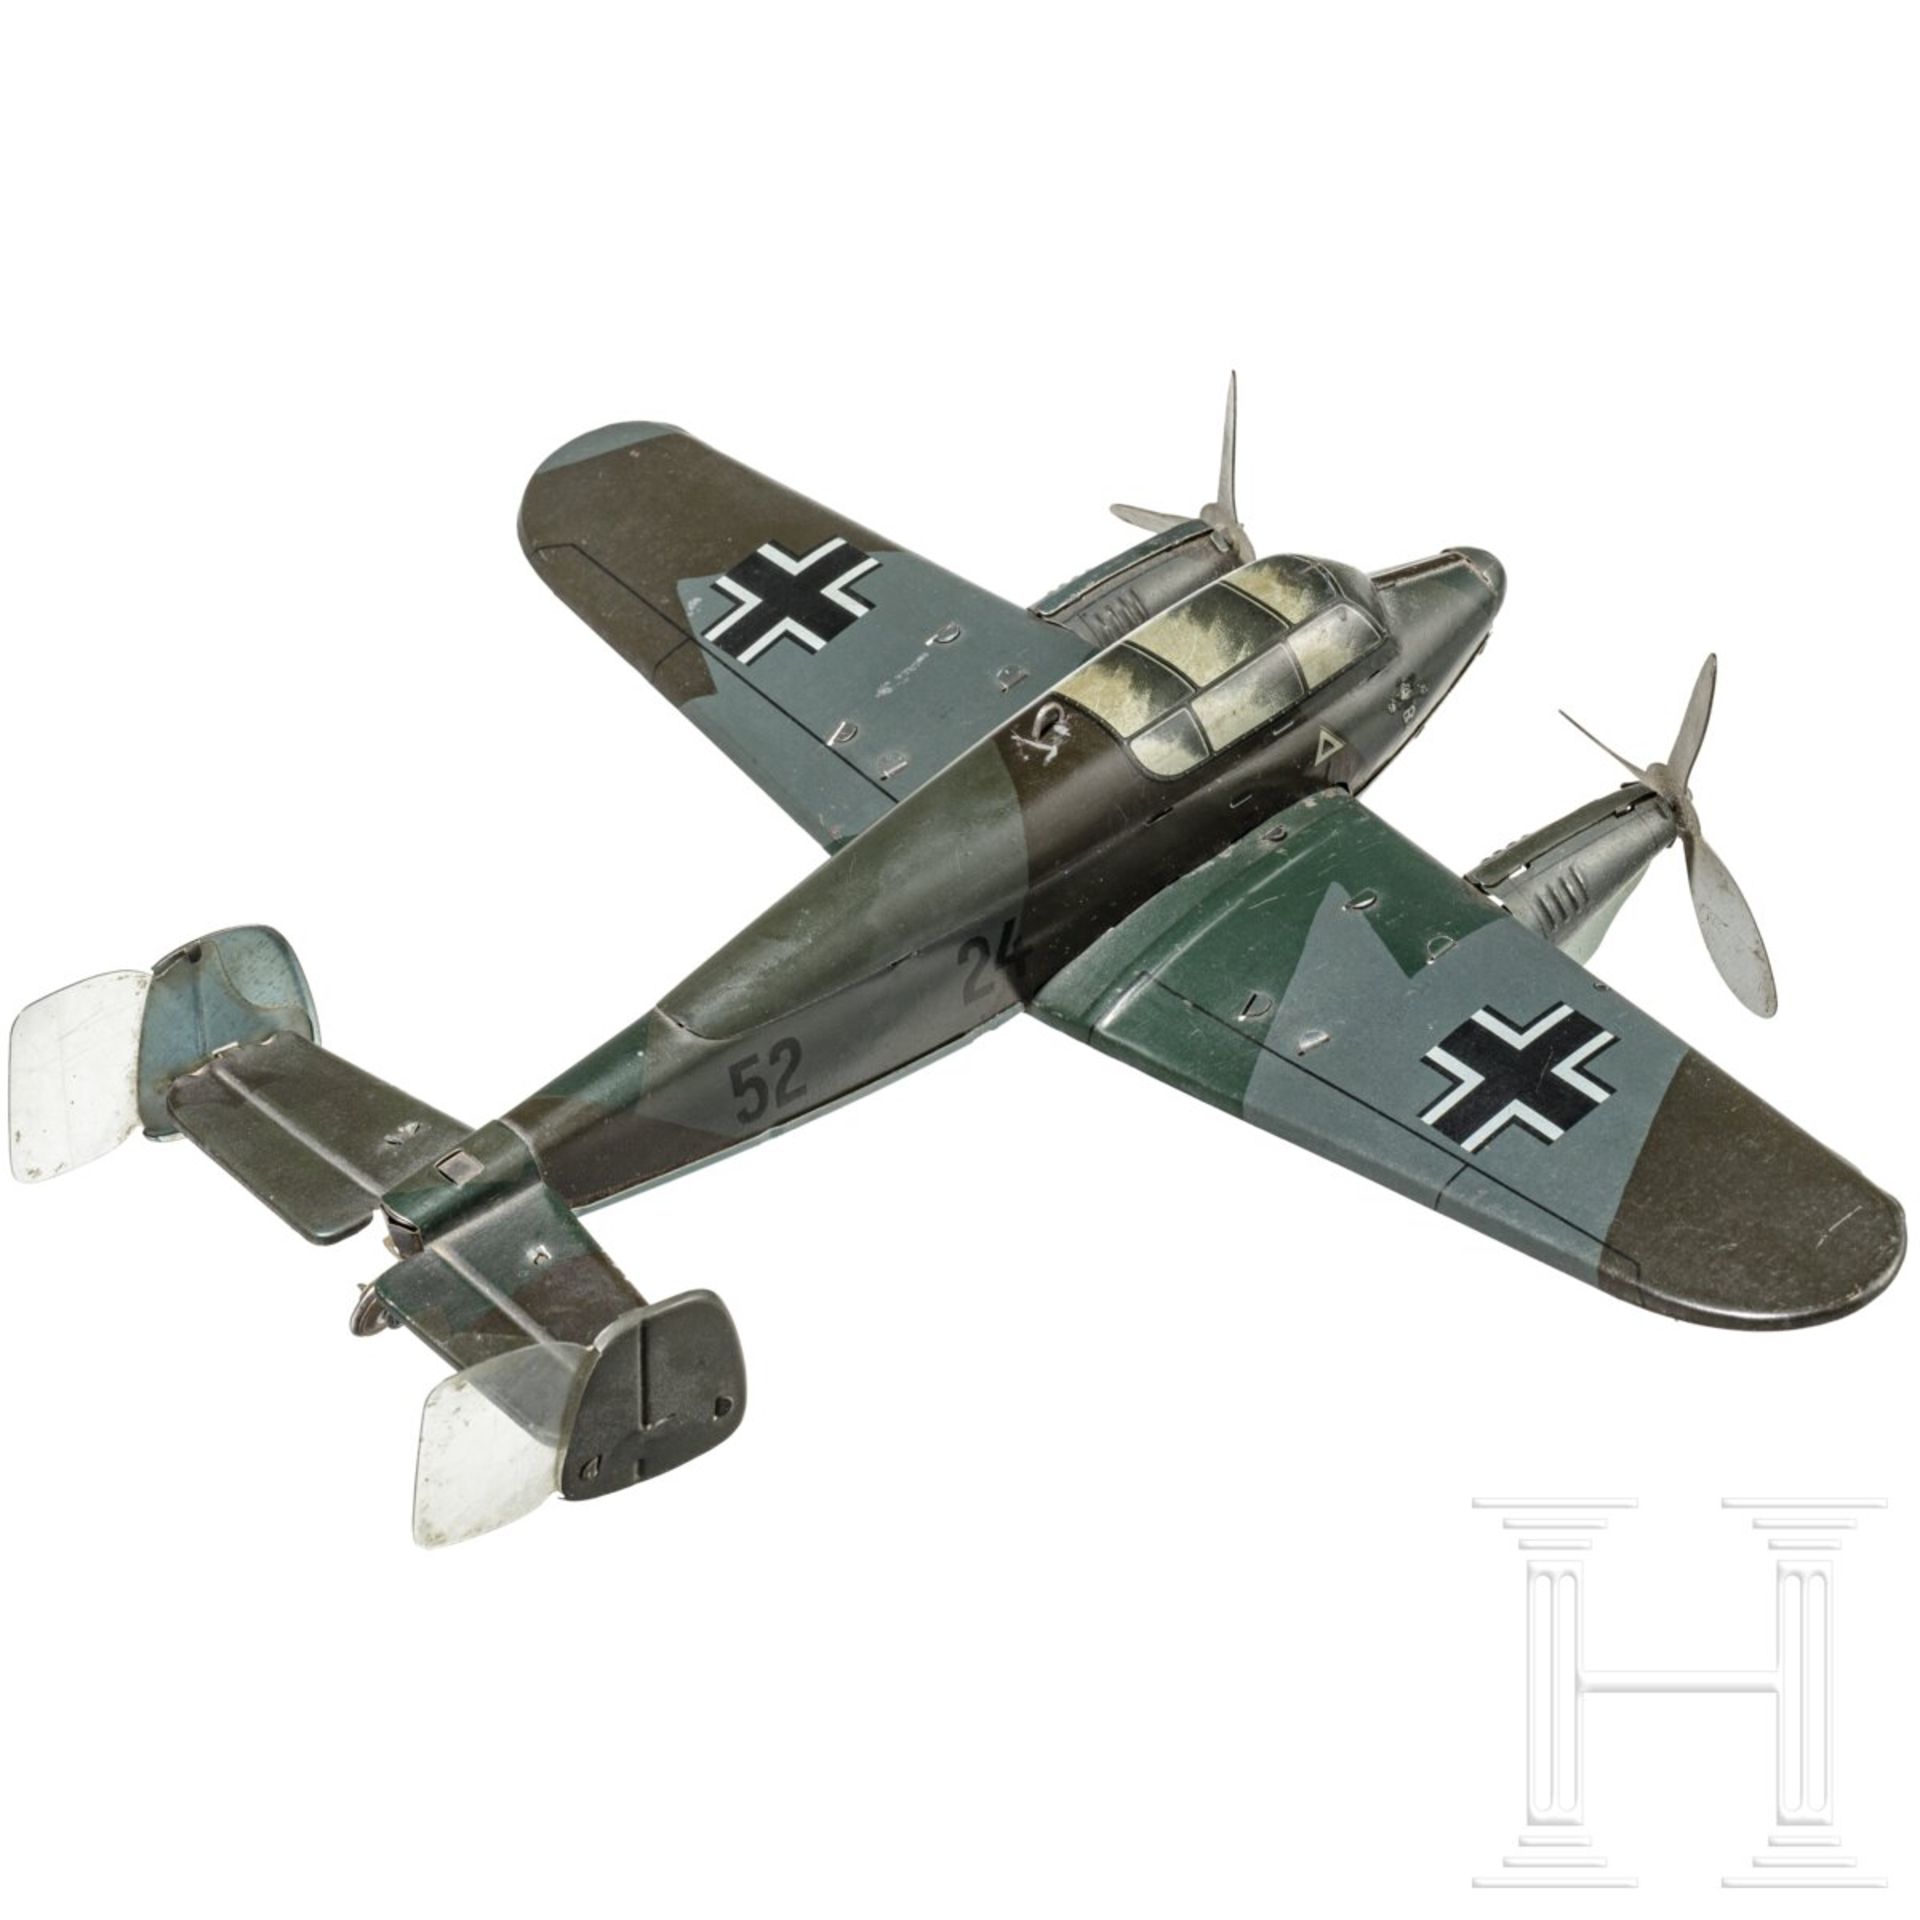 TippCo-Flugzeug "Jagdflieger Me 110" - Image 2 of 6